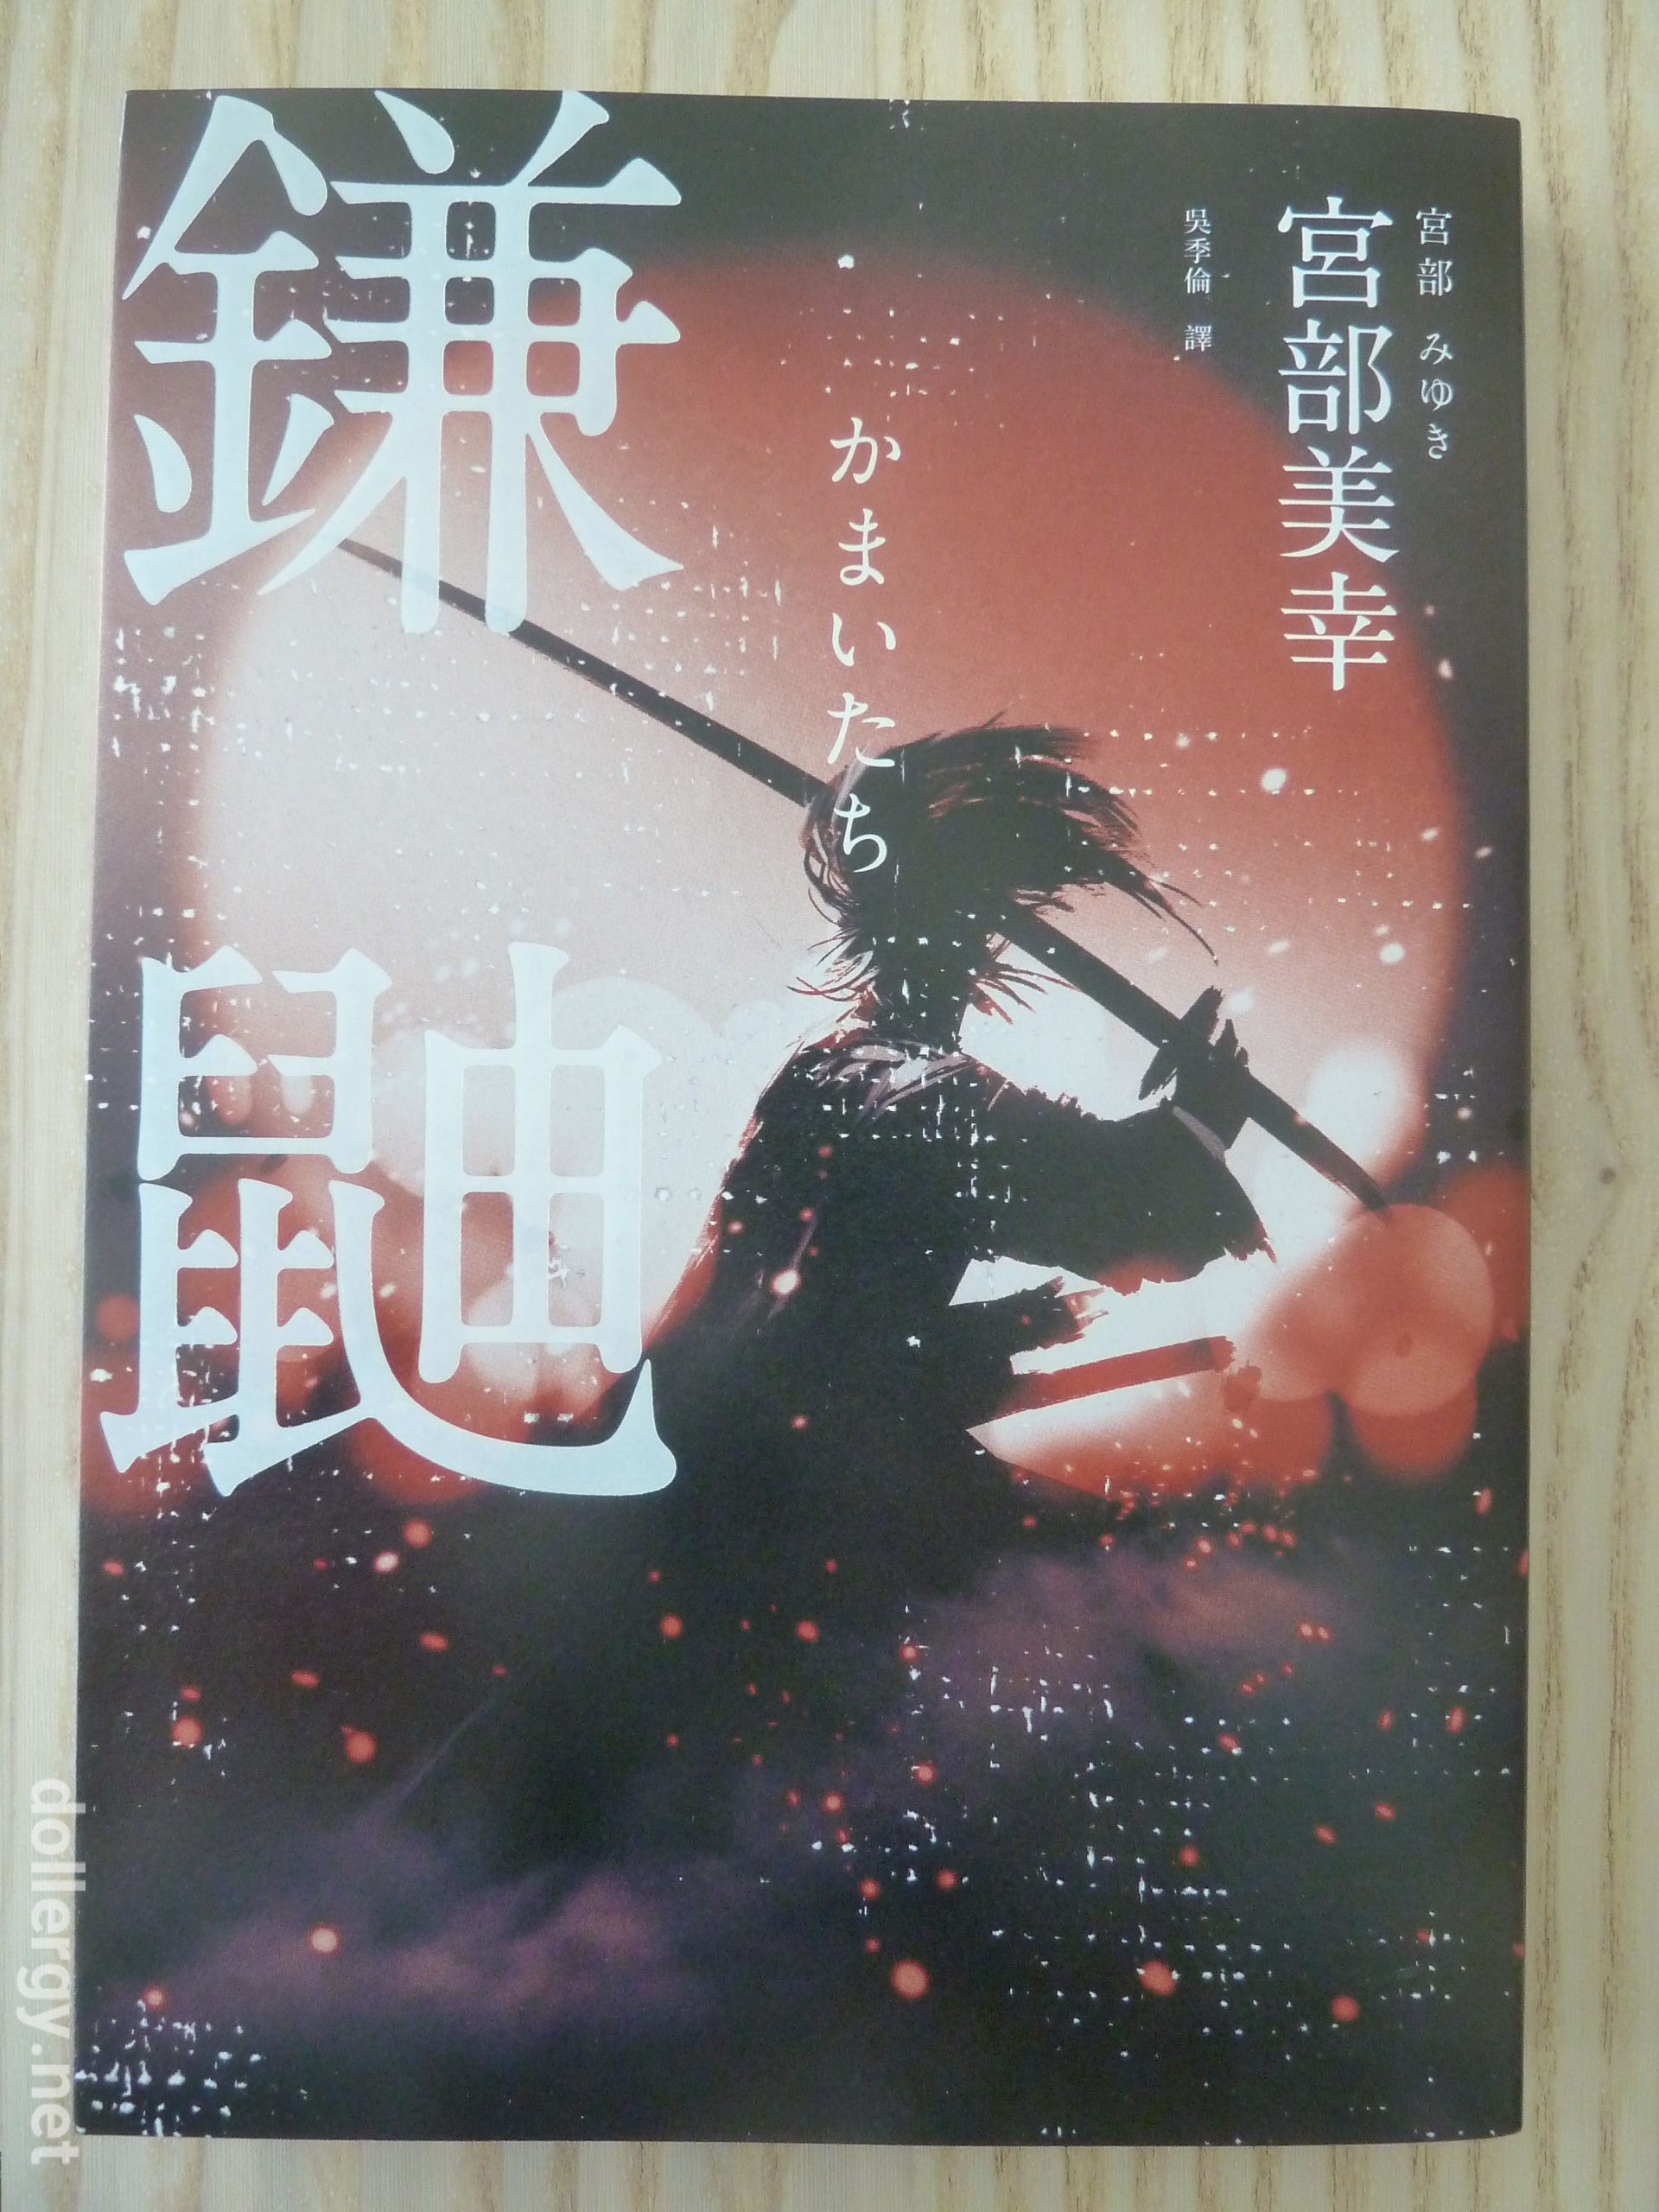 鎌鼬 Book Cover